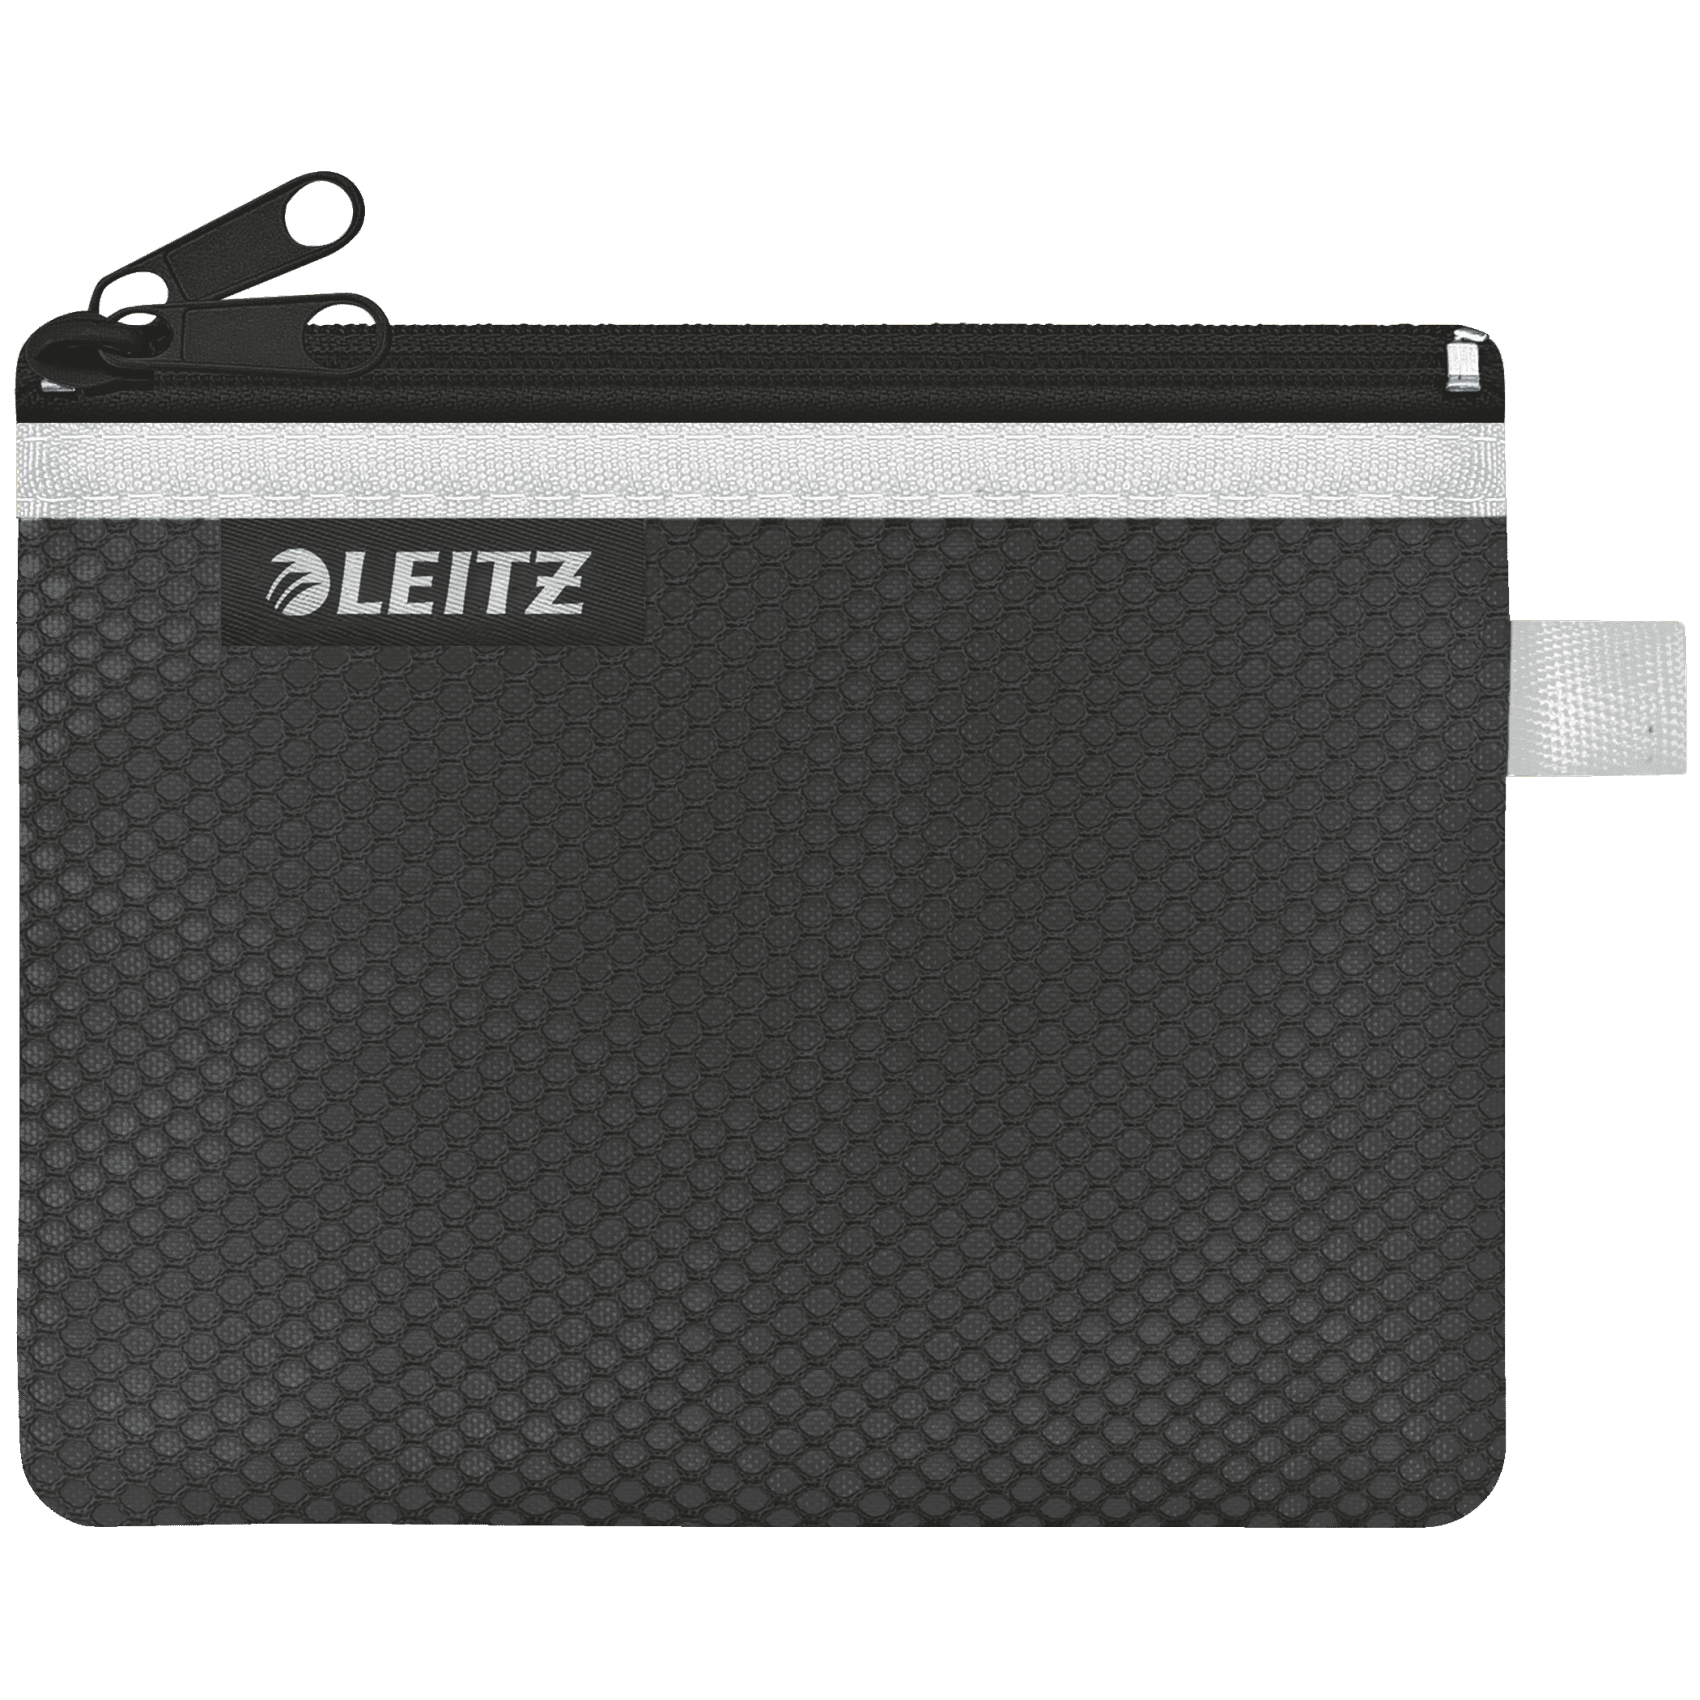 Dvojitá textilní kapsa Leitz Wow, velikost S, černá